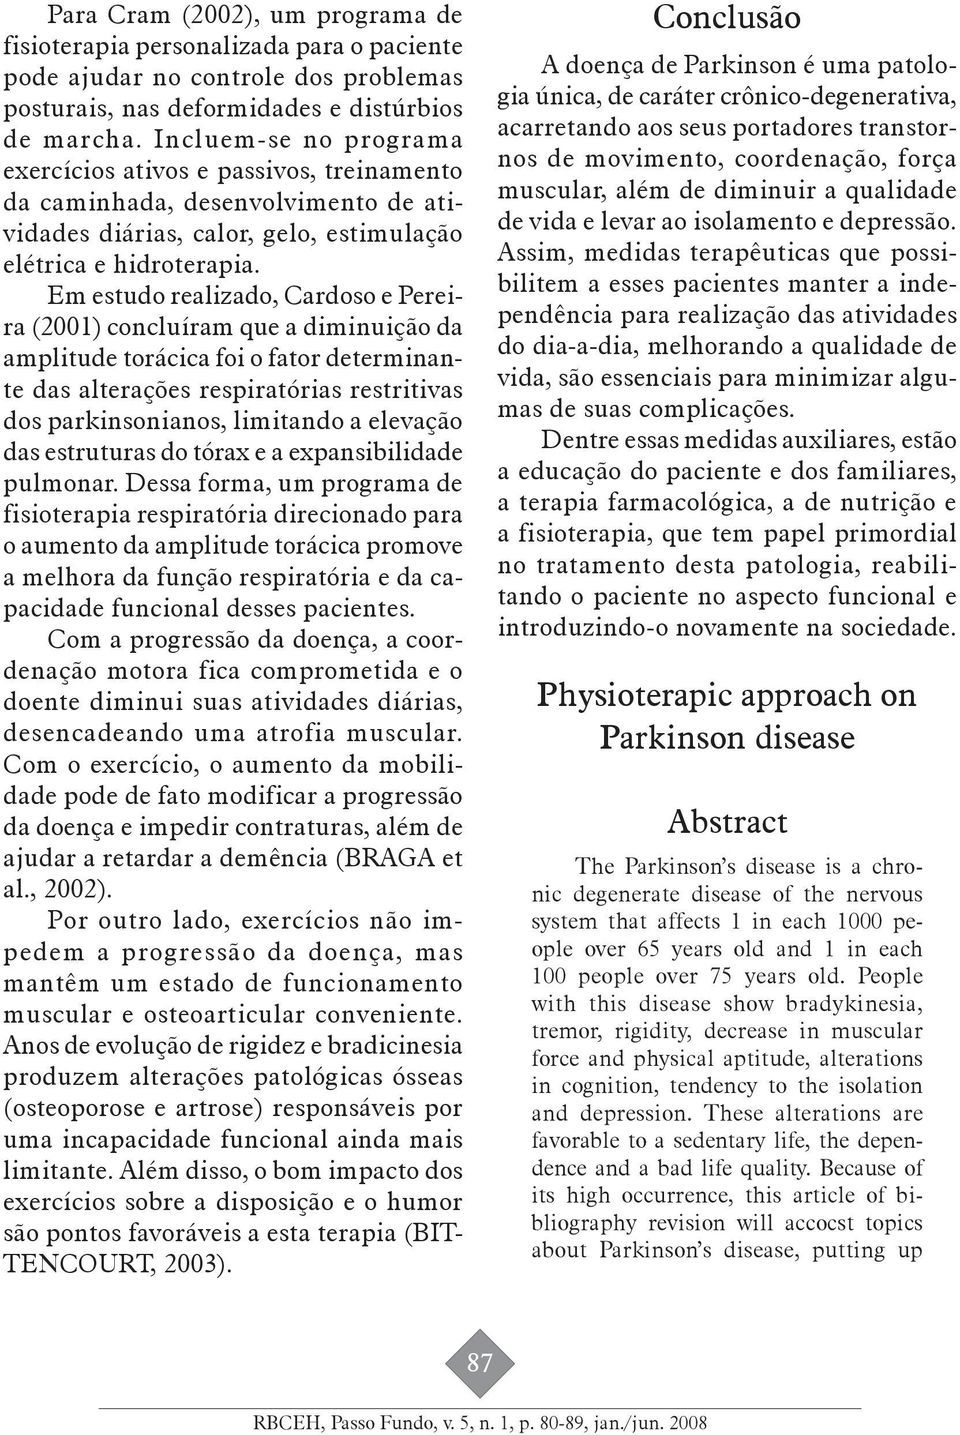 Em estudo realizado, Cardoso e Pereira (2001) concluíram que a diminuição da amplitude torácica foi o fator determinante das alterações respiratórias restritivas dos parkinsonianos, limitando a